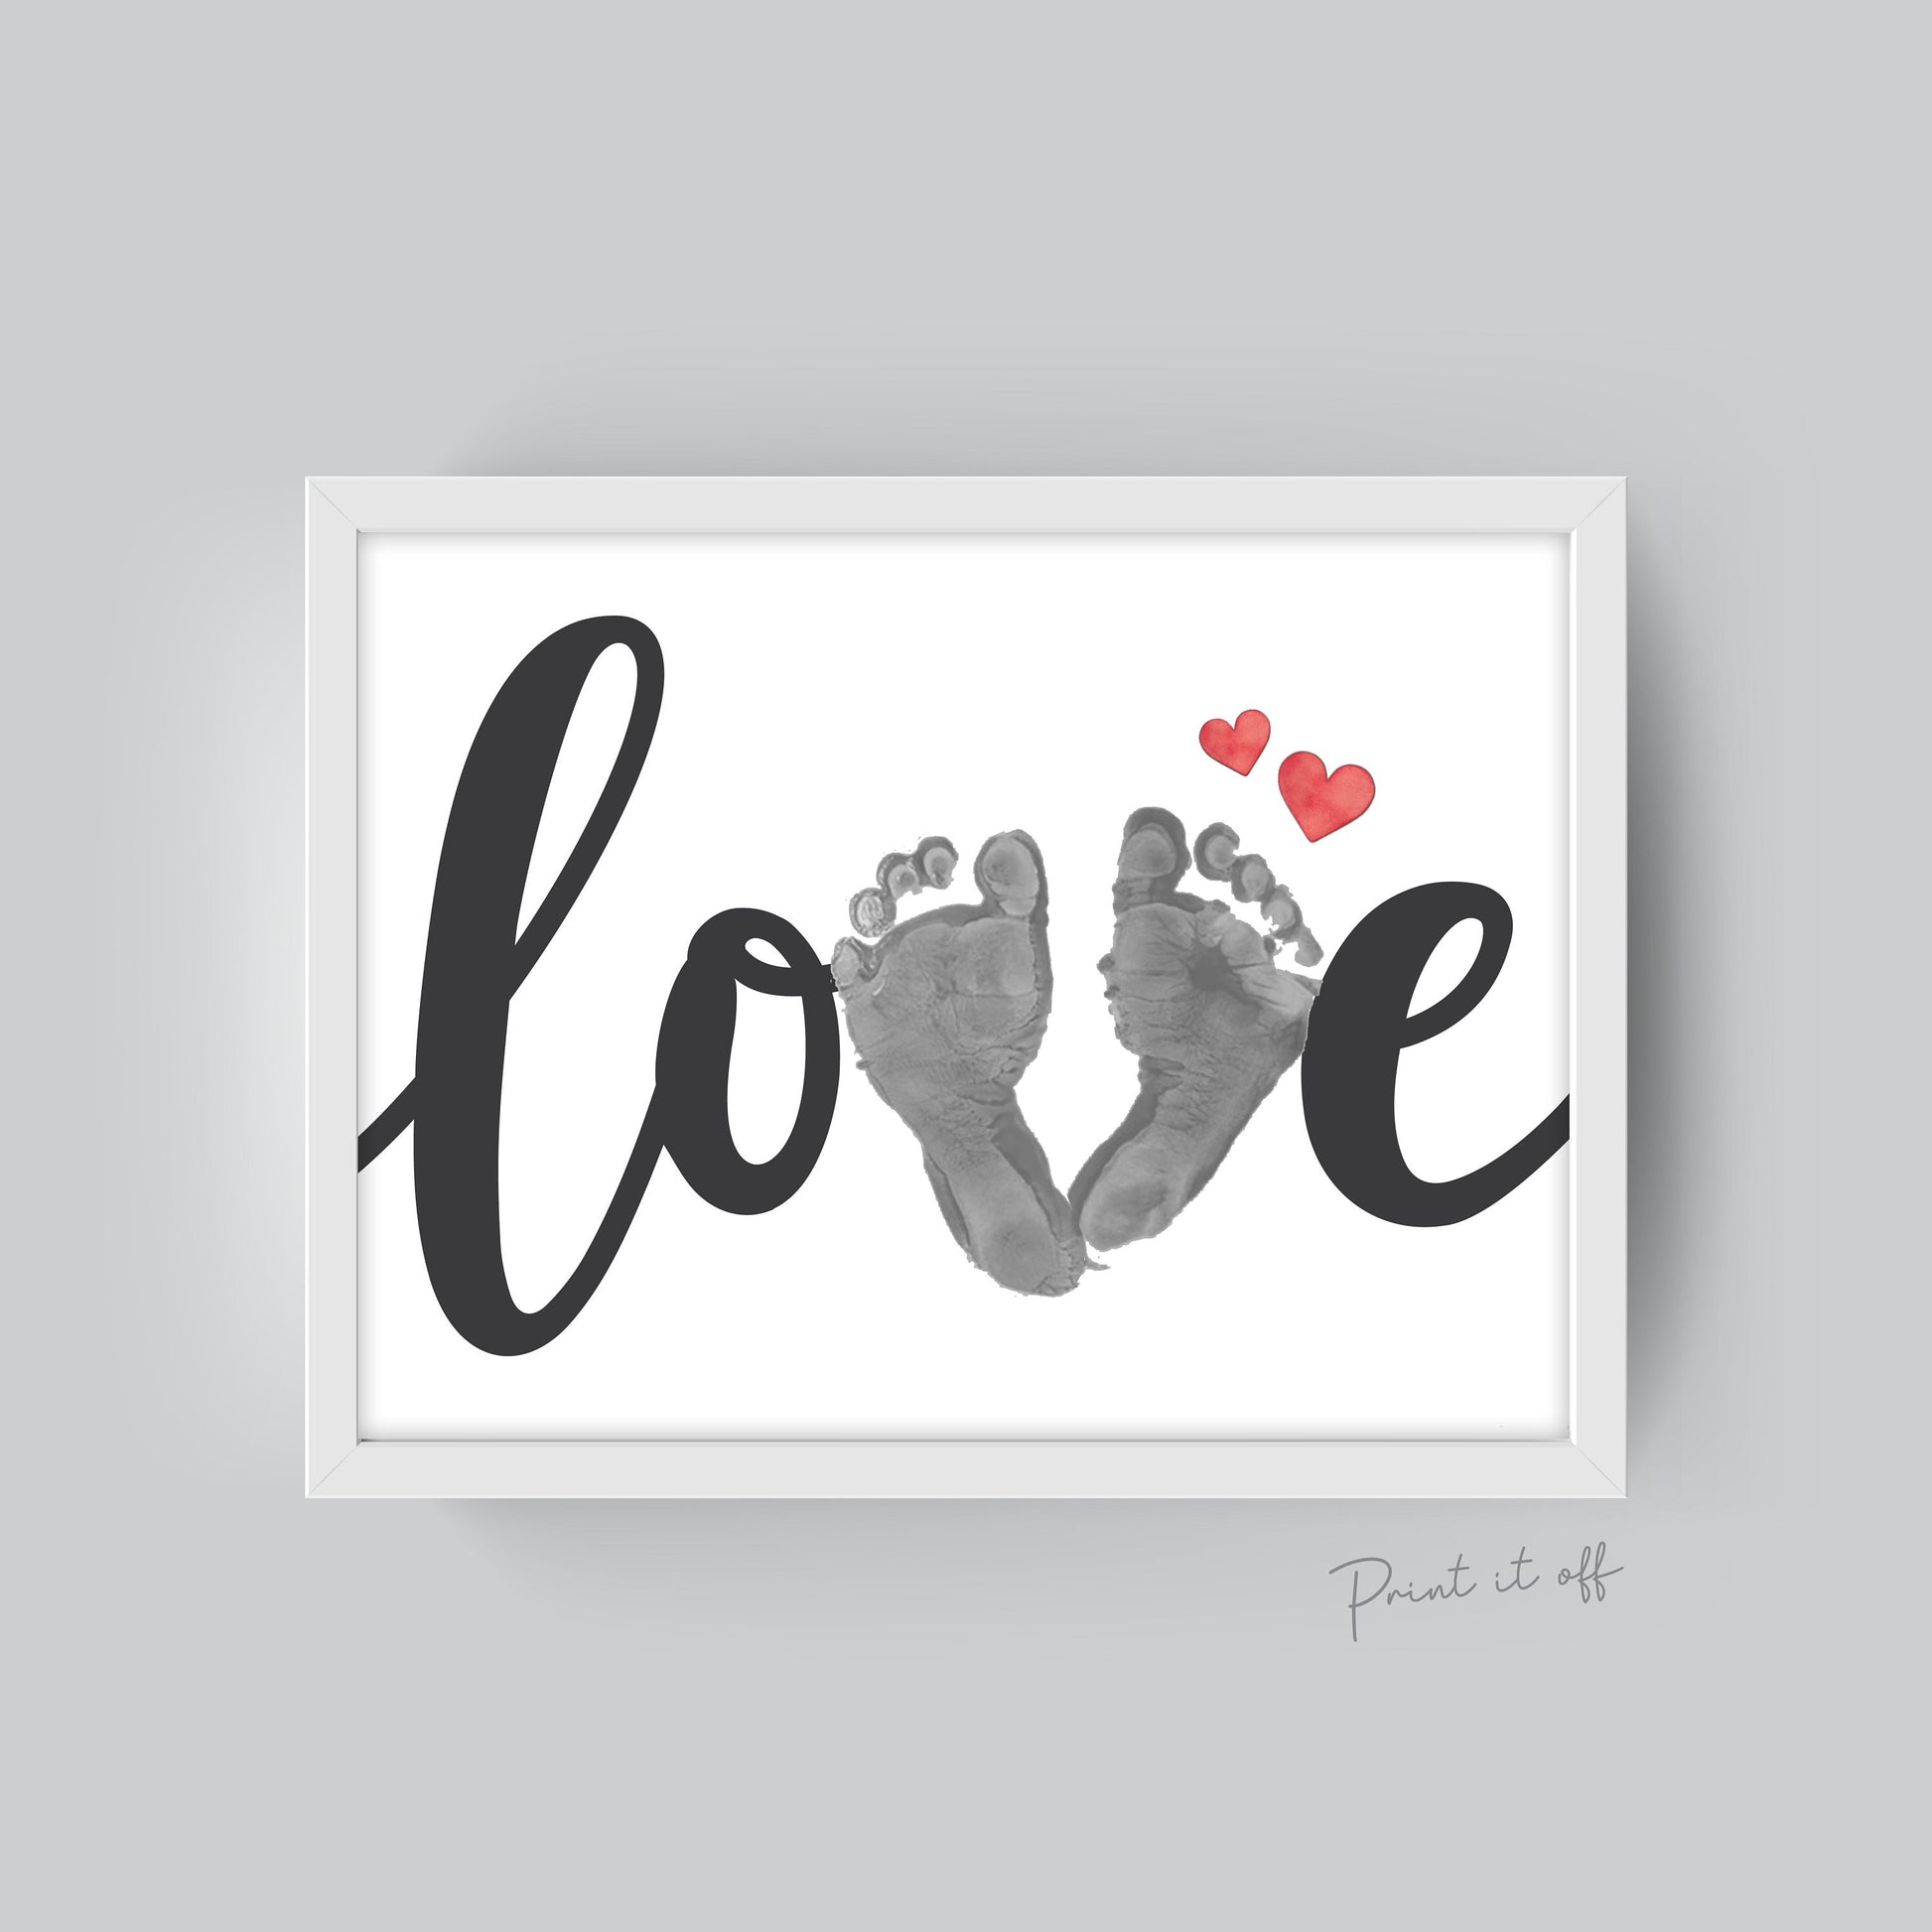 LOVE / Footprint Art Craft / Heart Love Valentine's Day / DI PRINT IT OFF